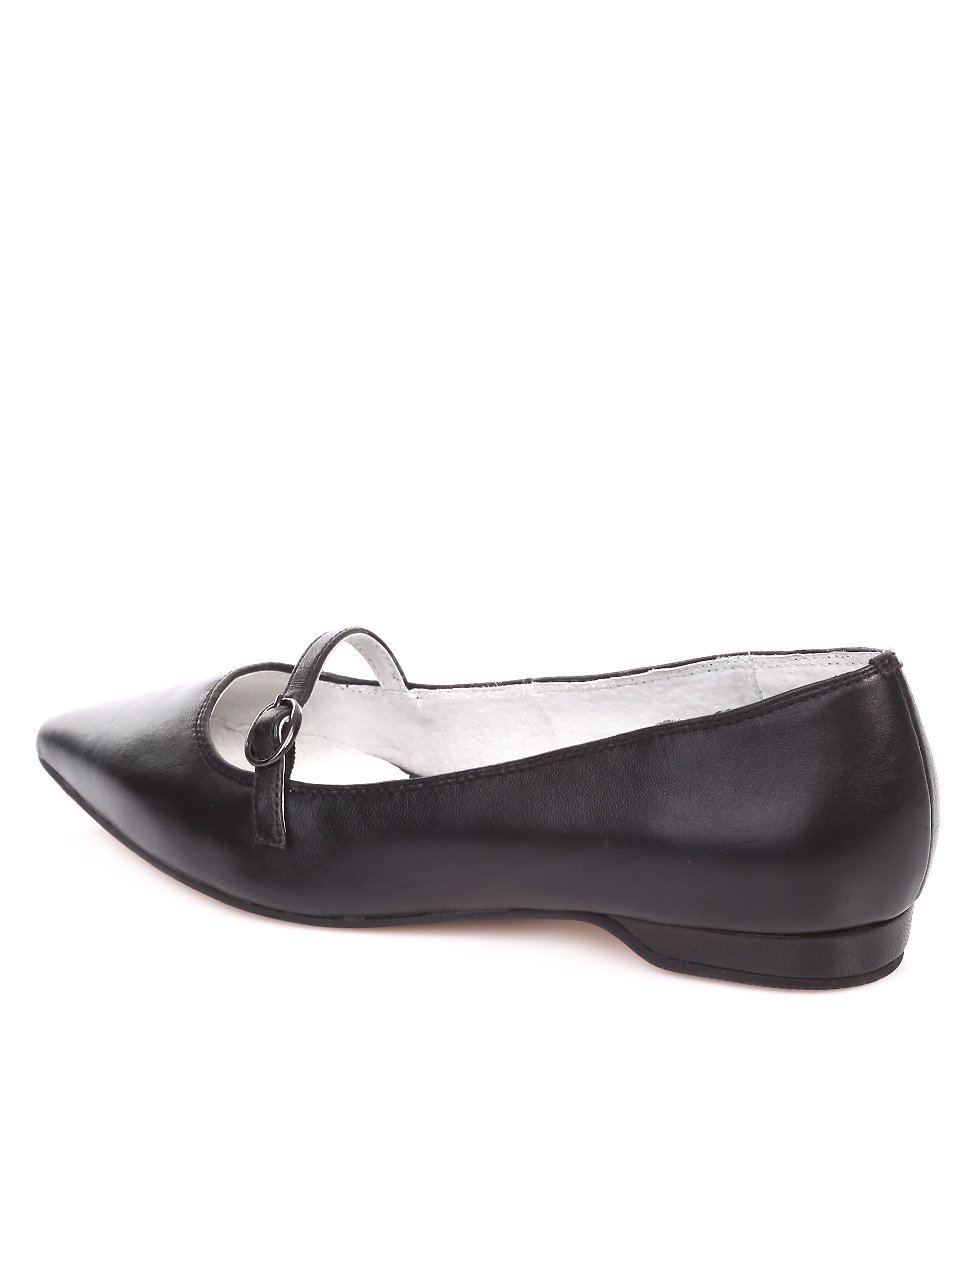 Ежедневни дамски обувки от естествена кожа 3I-17279 black